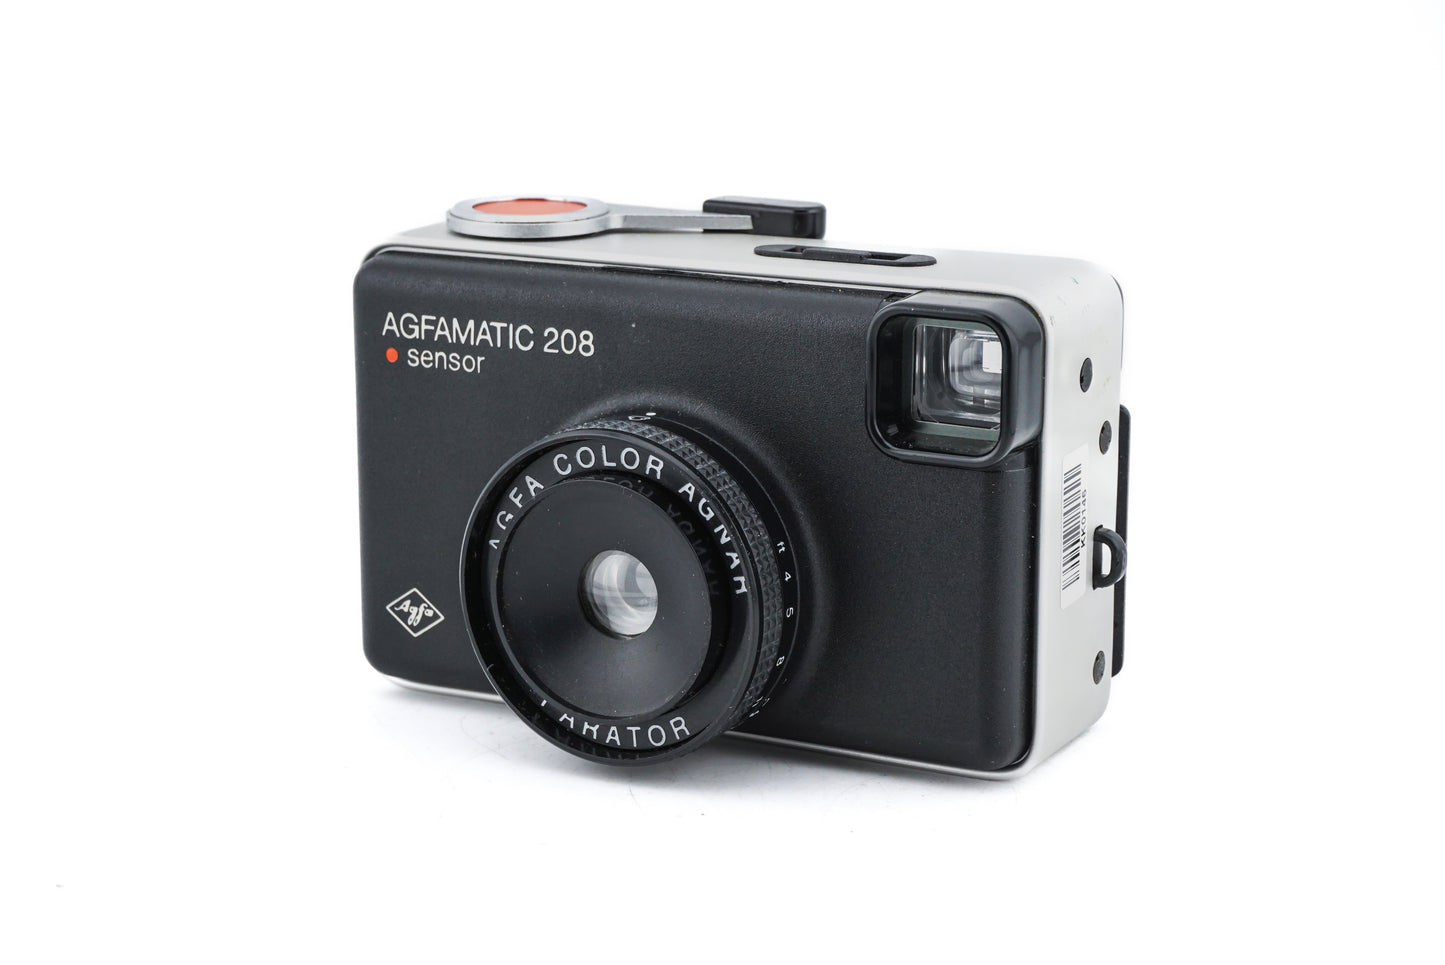 Agfa Agfamatic 208 Sensor - Camera